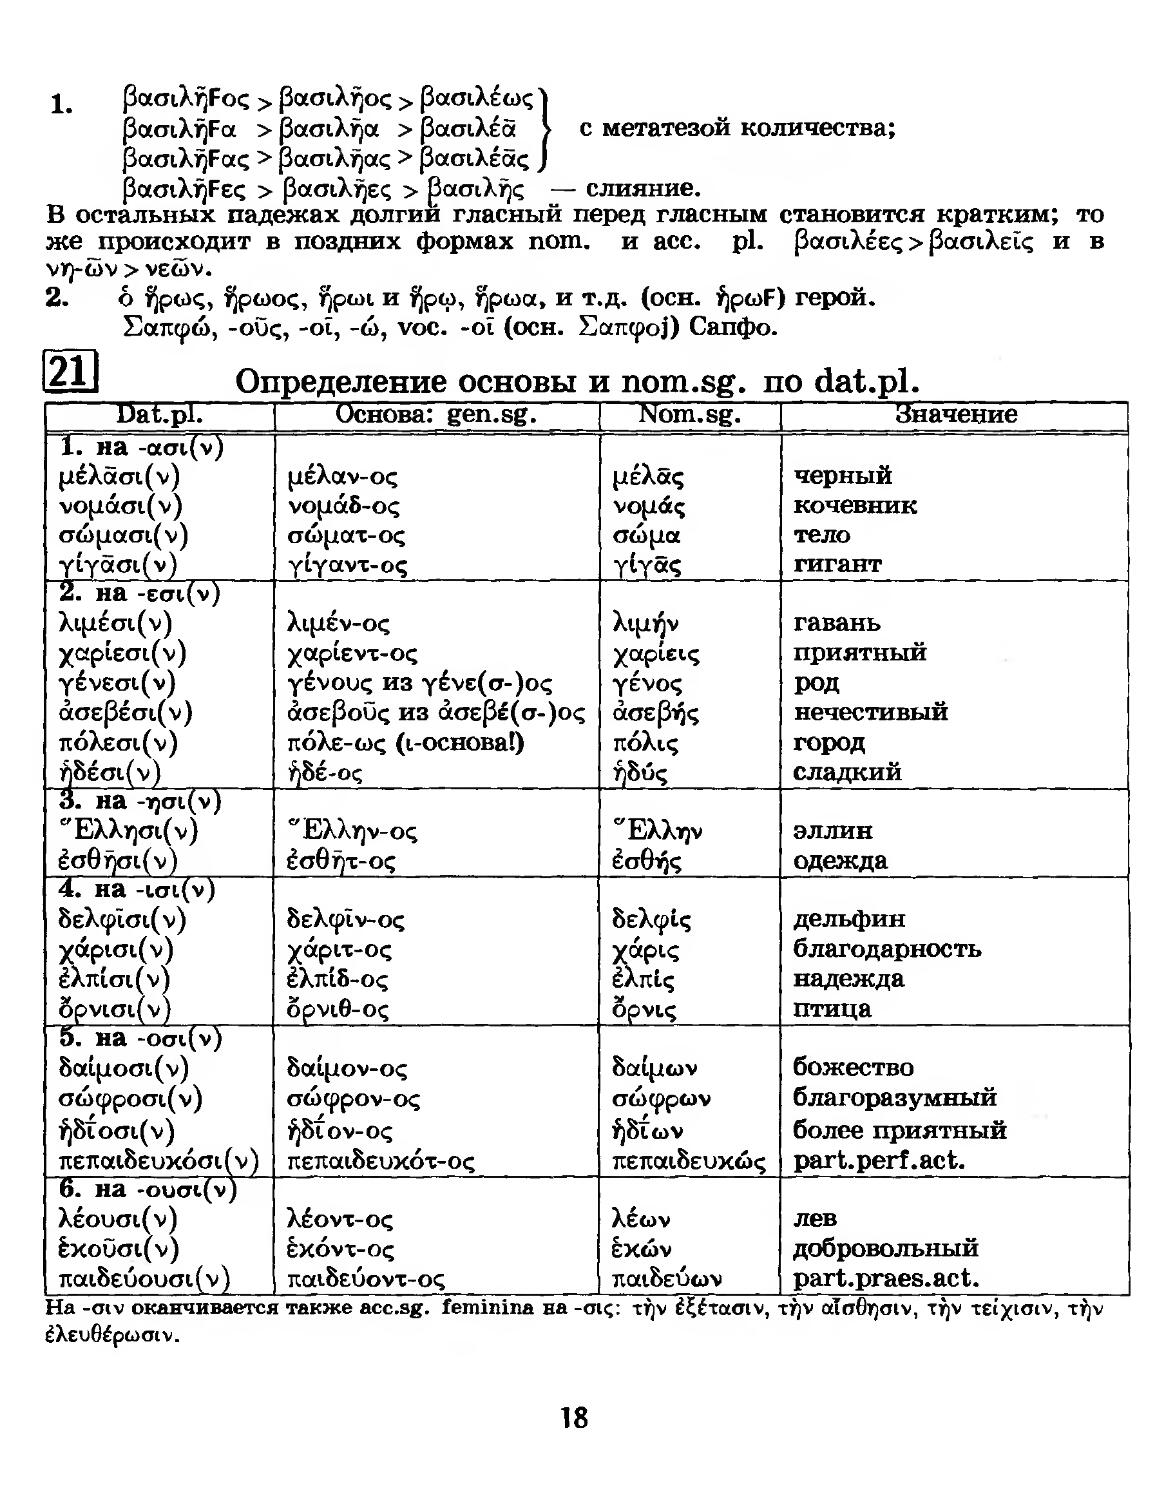 21. Определение основы и nom. sg. по dat. pl.